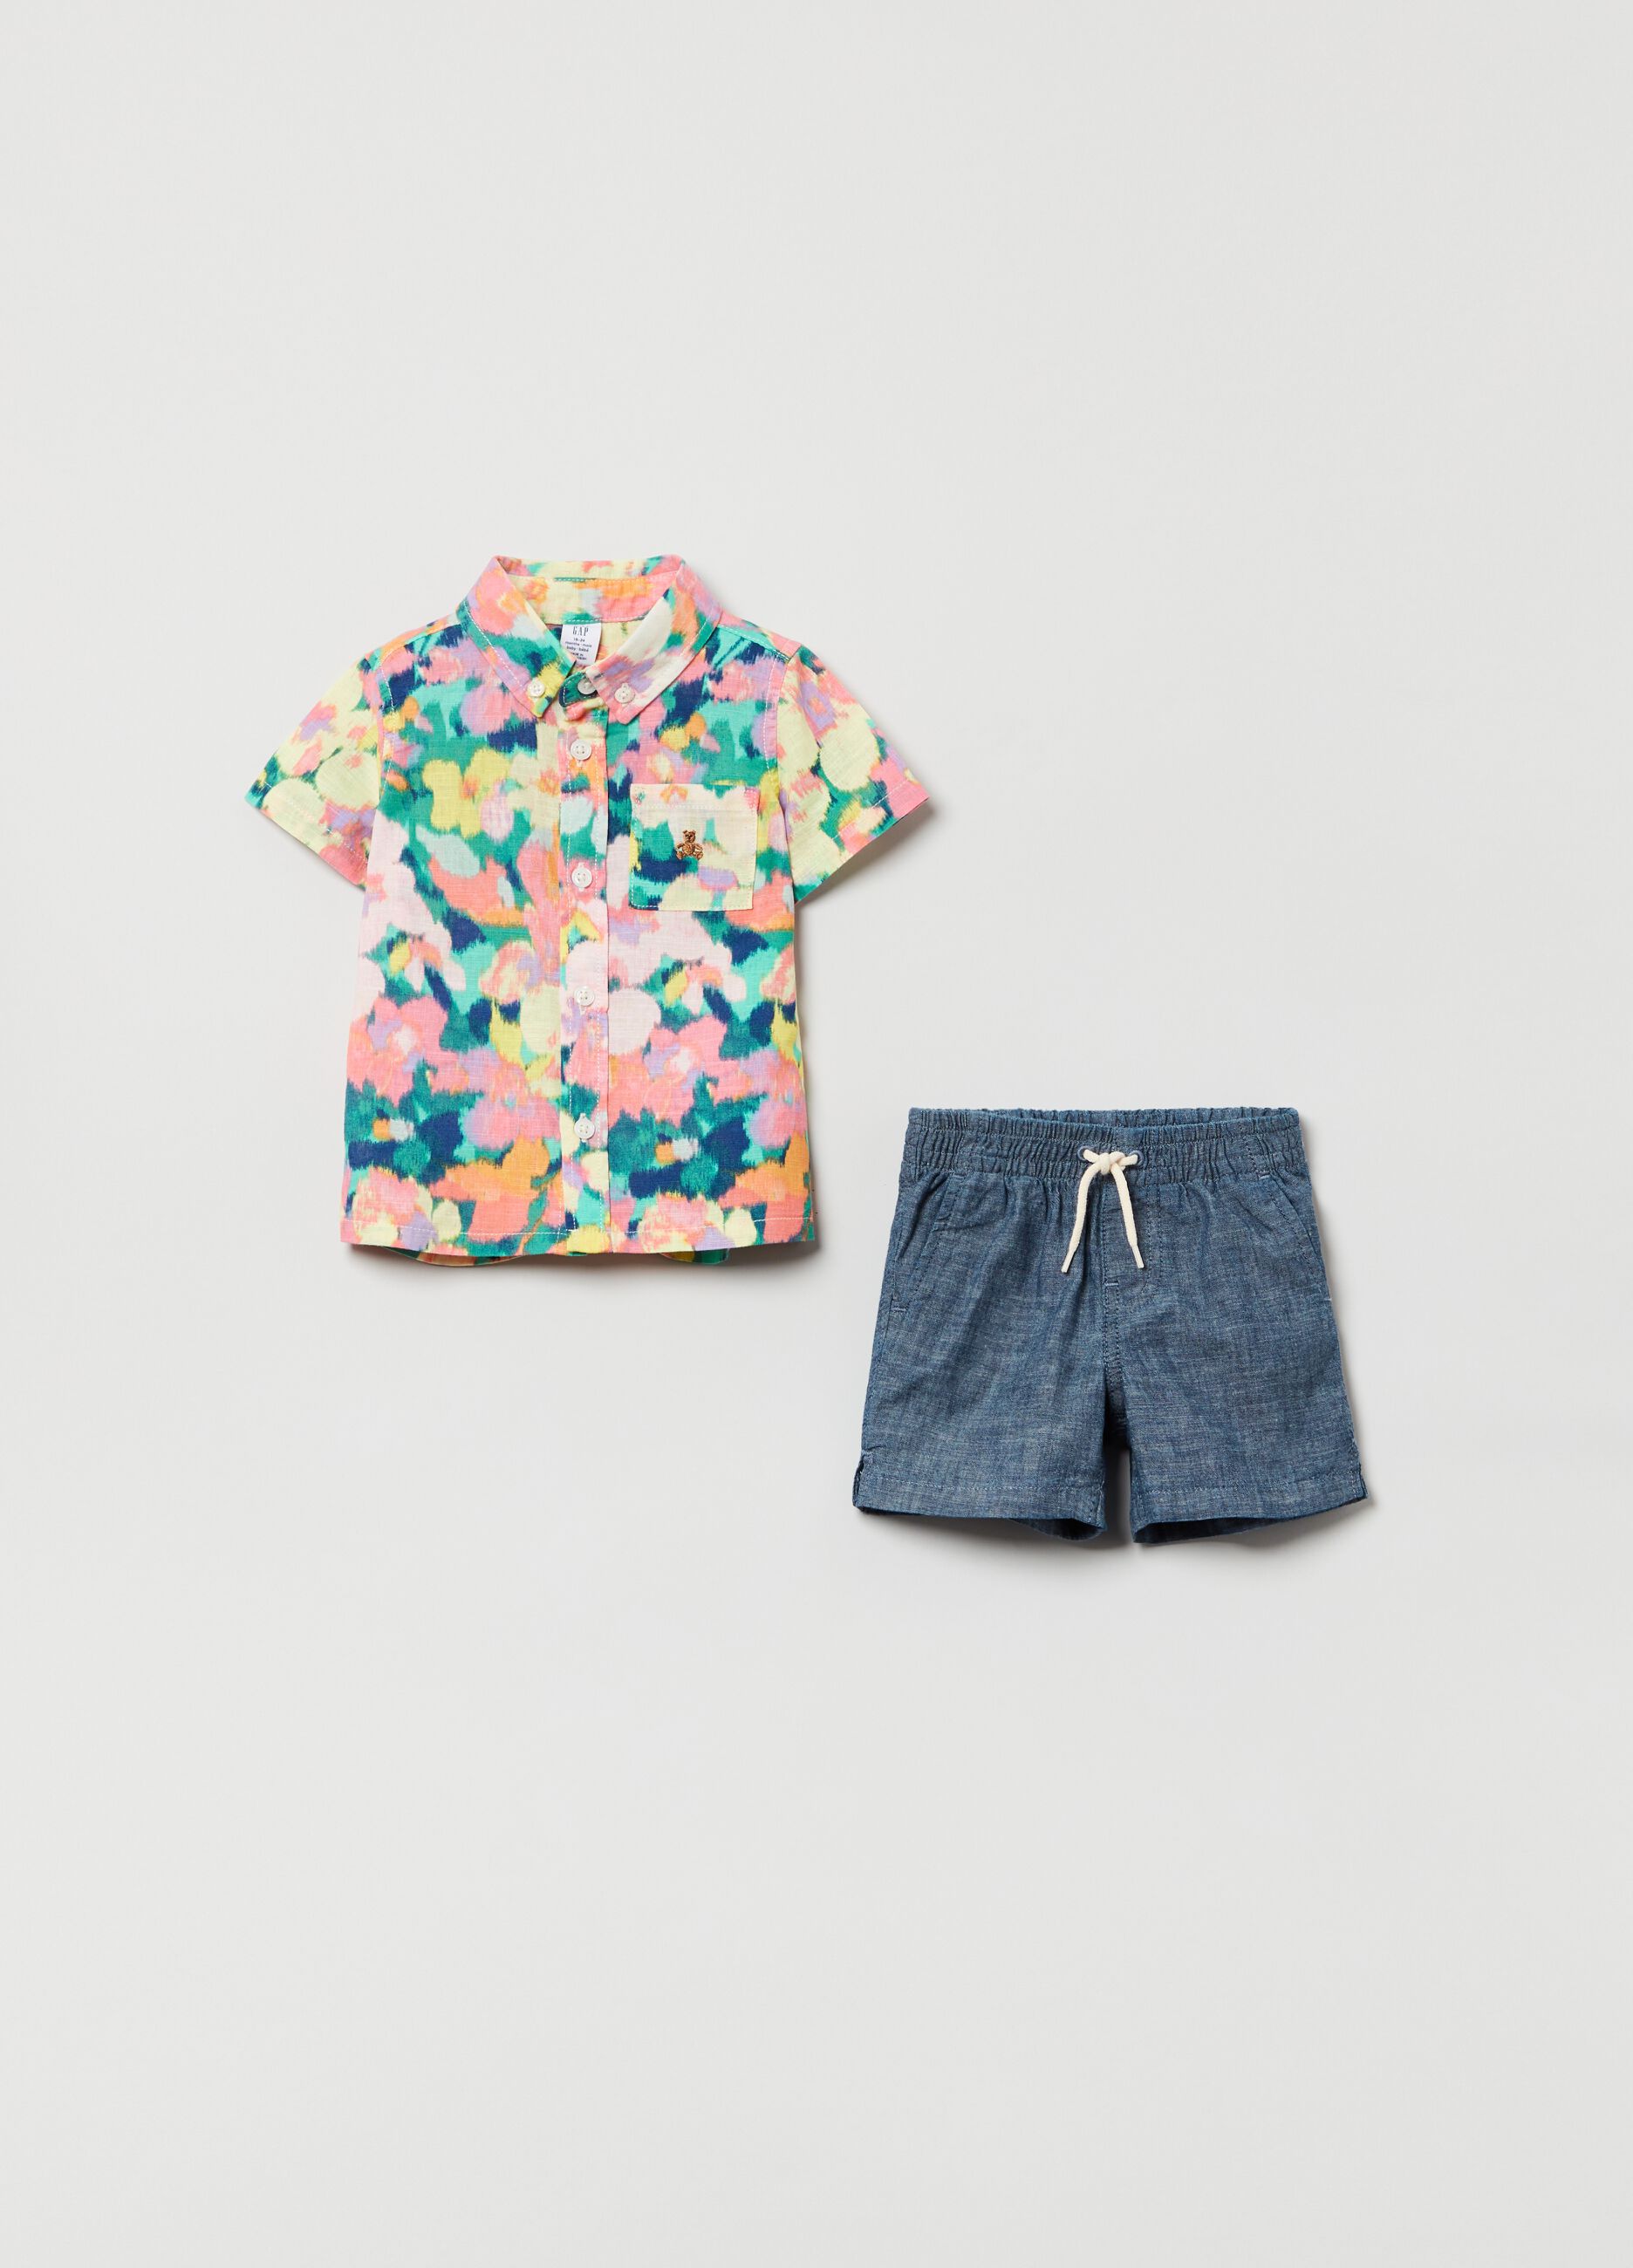 Floral shirt and Bermuda shorts with drawstring set